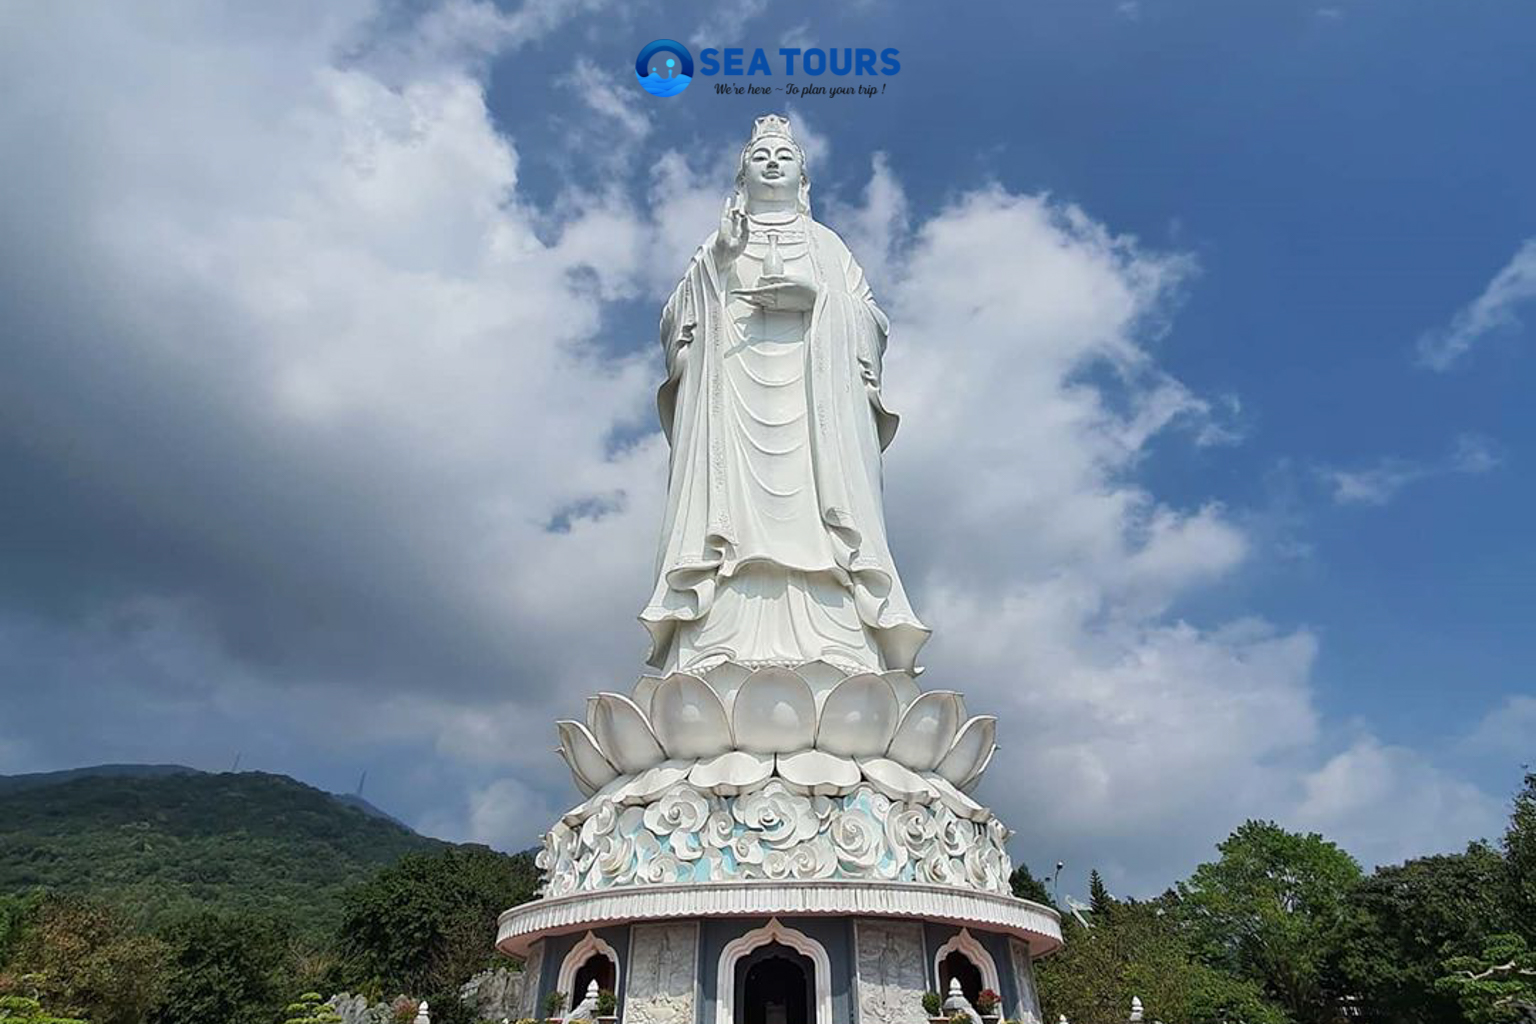 Tour Du lịch Đà Nẵng 4 Ngày 3 Đêm - Phật Bà Quan Âm Chùa Linh Ứng